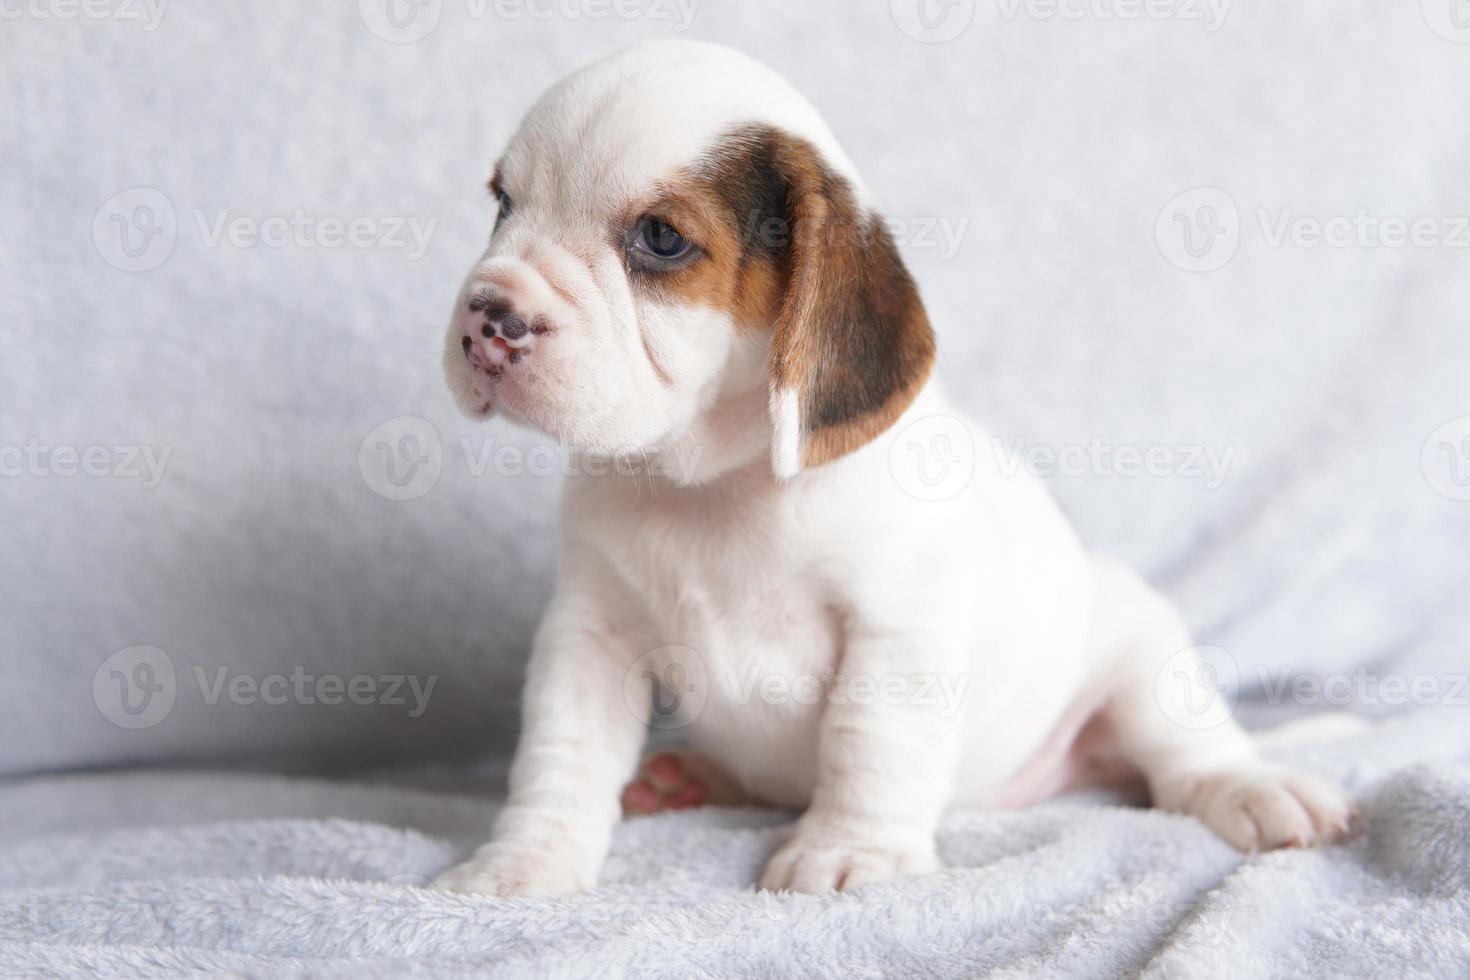 les beagles sont utilisés dans une gamme de procédures de recherche. l'apparence générale du beagle ressemble à un foxhound miniature. les beagles ont un excellent nez. photo